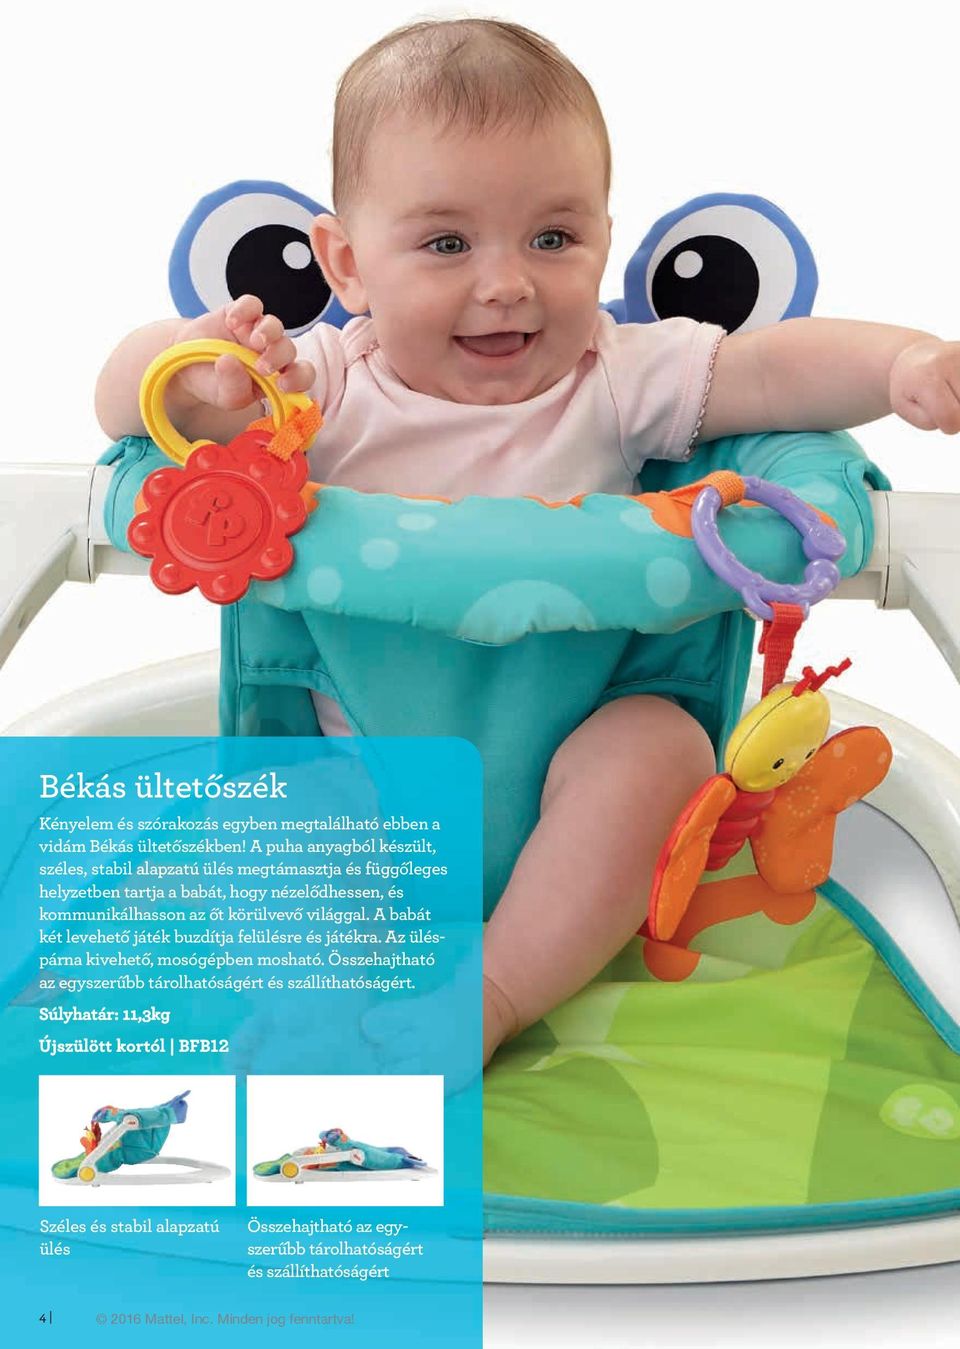 körülvevő világgal. A babát két levehető játék buzdítja felülésre és játékra. Az üléspárna kivehető, mosógépben mosható.